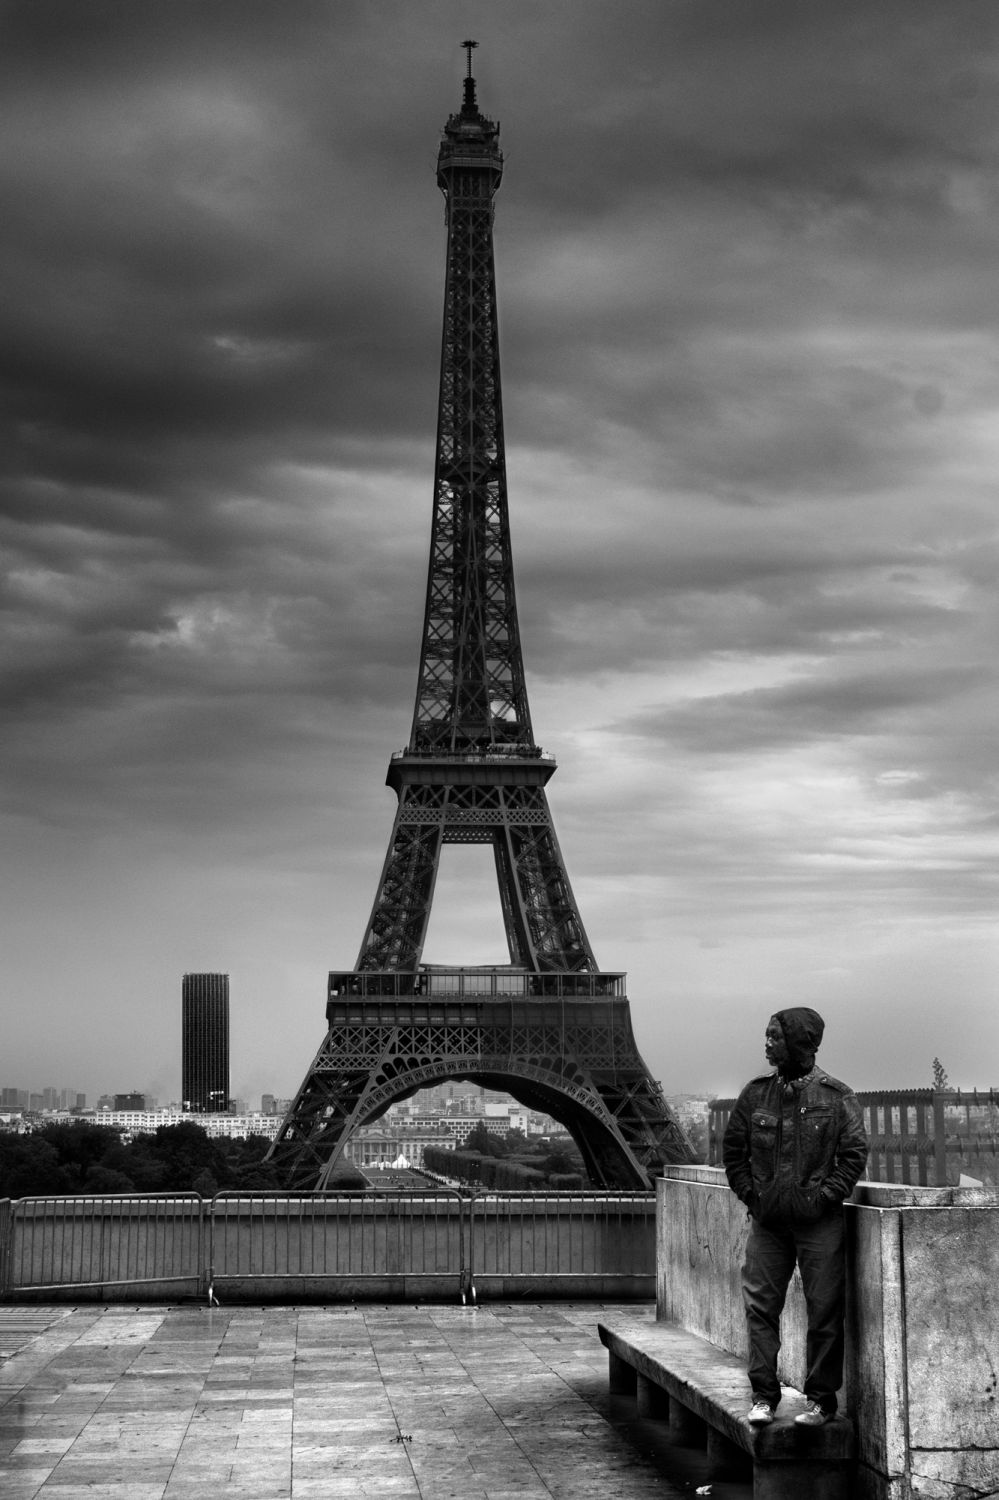 Paris - Le garde du corps de la tour Eiffel